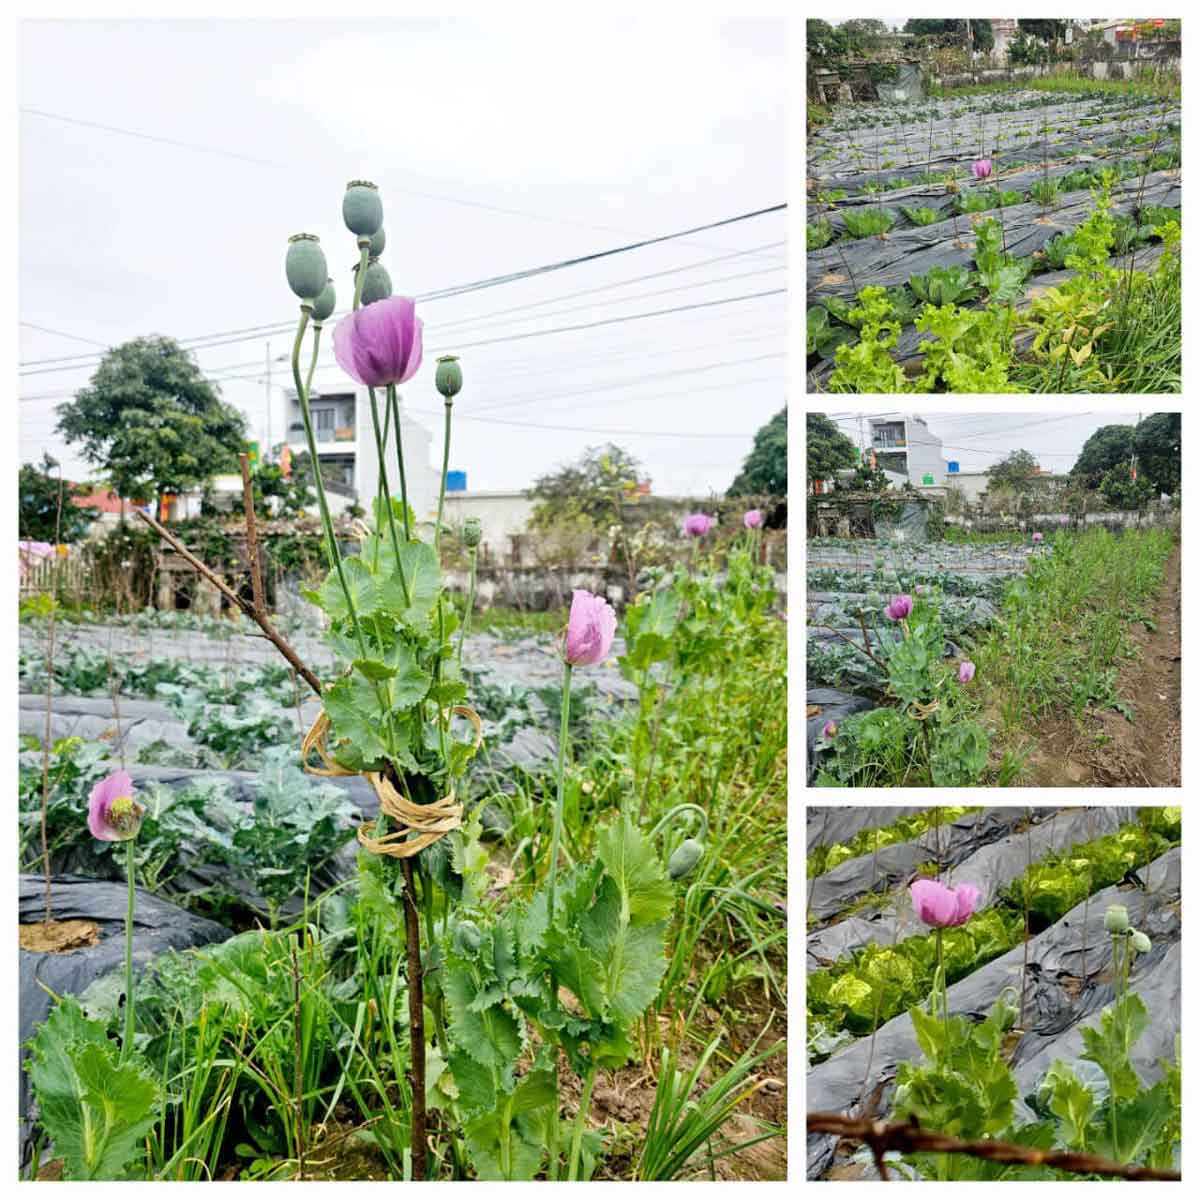 Gần 300 cây hoa anh túc tại vườn nhà ông Hữu. Ảnh: An Ninh Nam Định